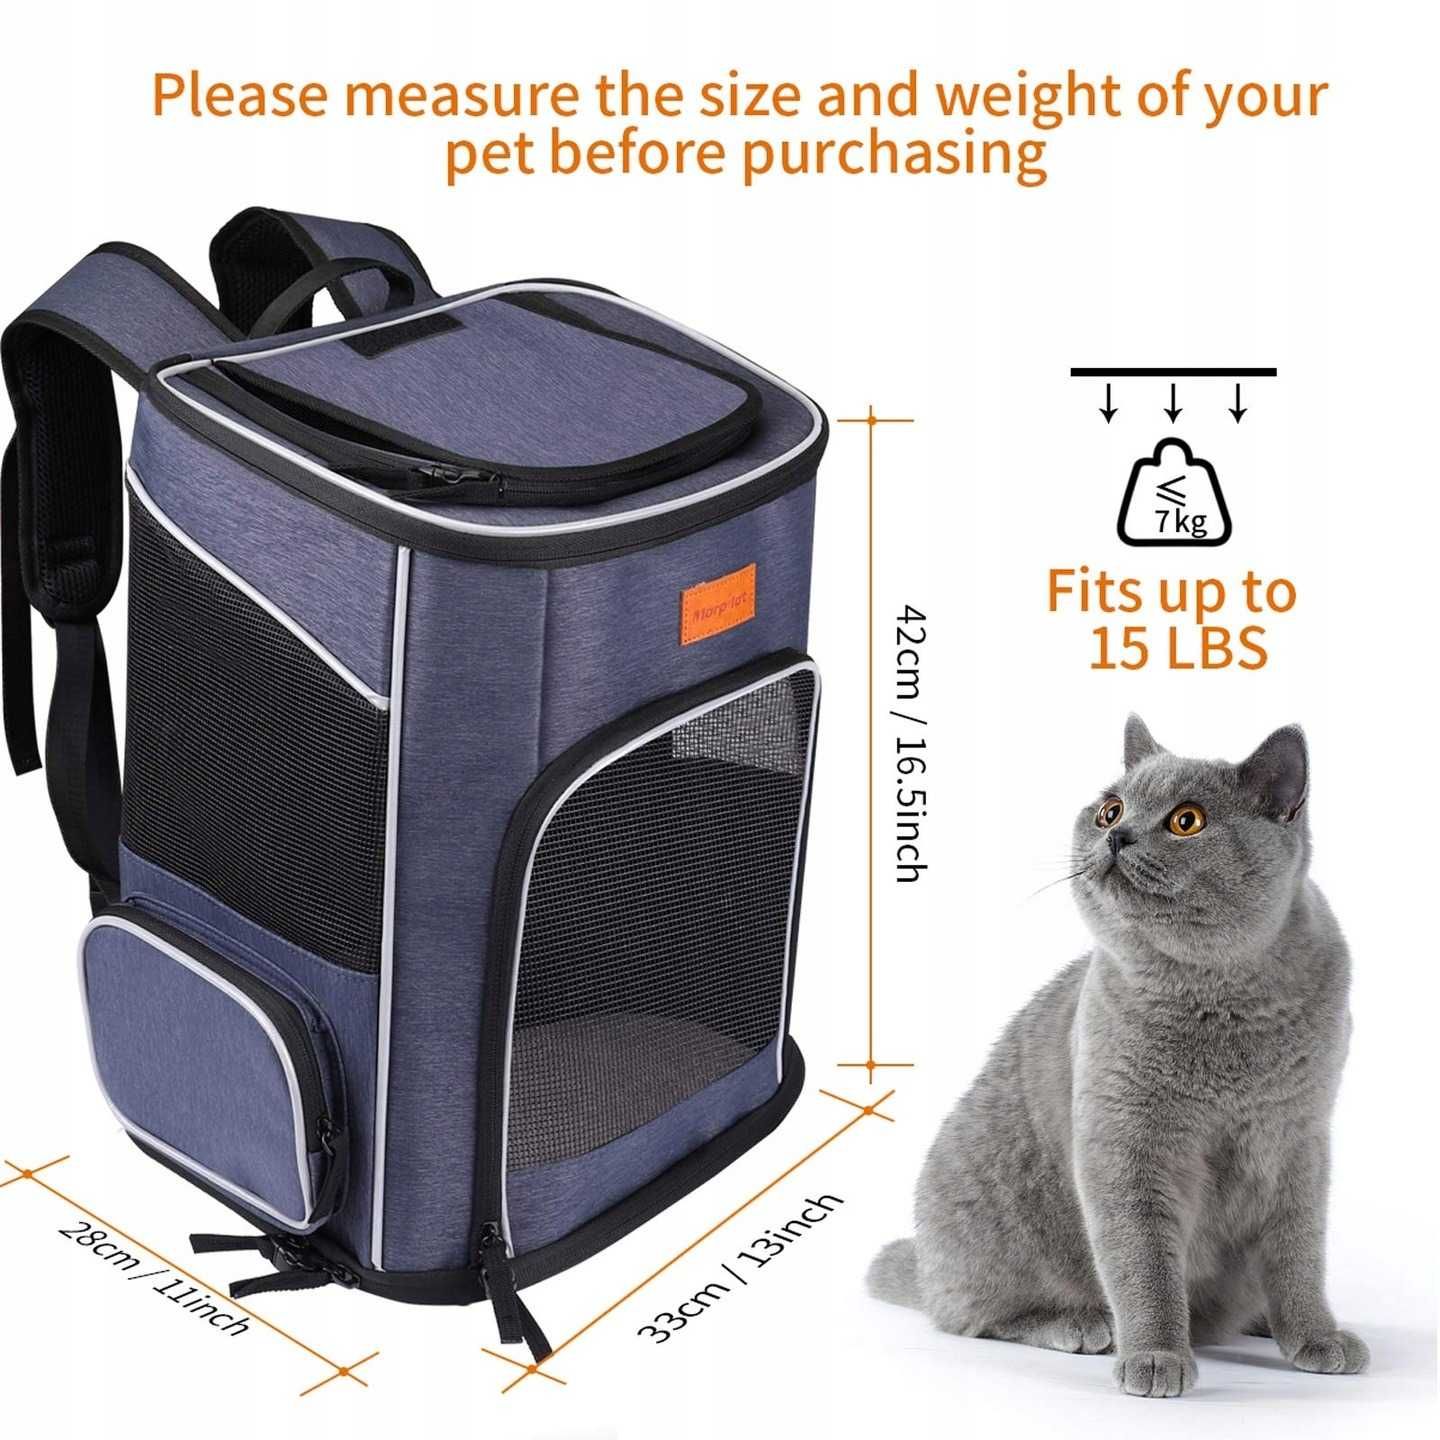 Lekesky Duży plecak dla kotów, plecak dla psów i kotów do 8-10 kg